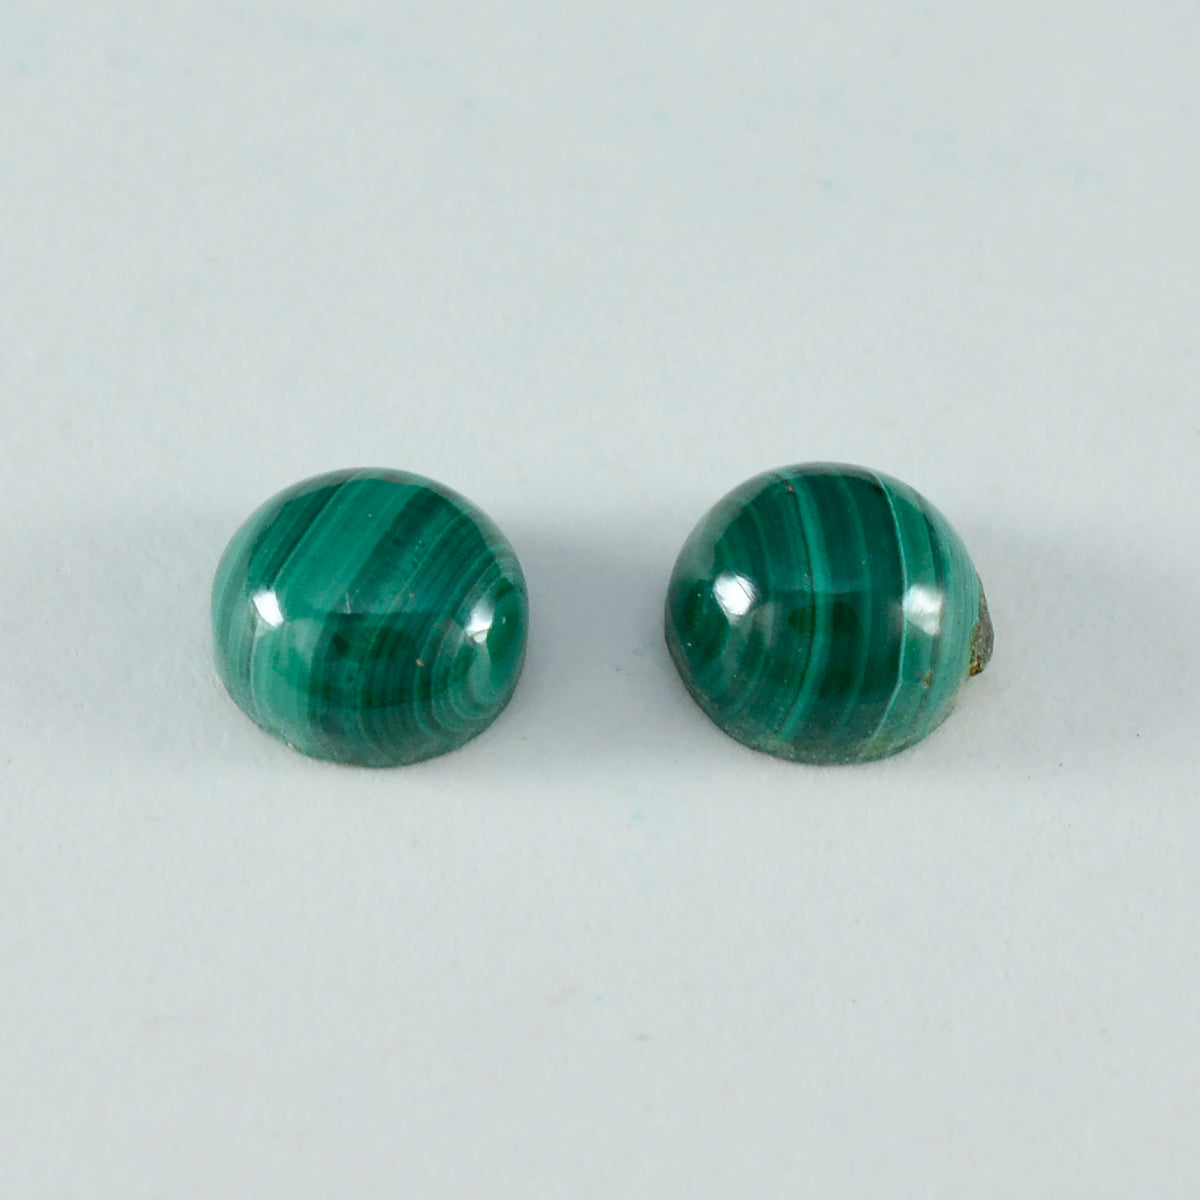 riyogems 1 pz cabochon di malachite verde 5x5 mm di forma rotonda, pietra preziosa di qualità dall'aspetto piacevole